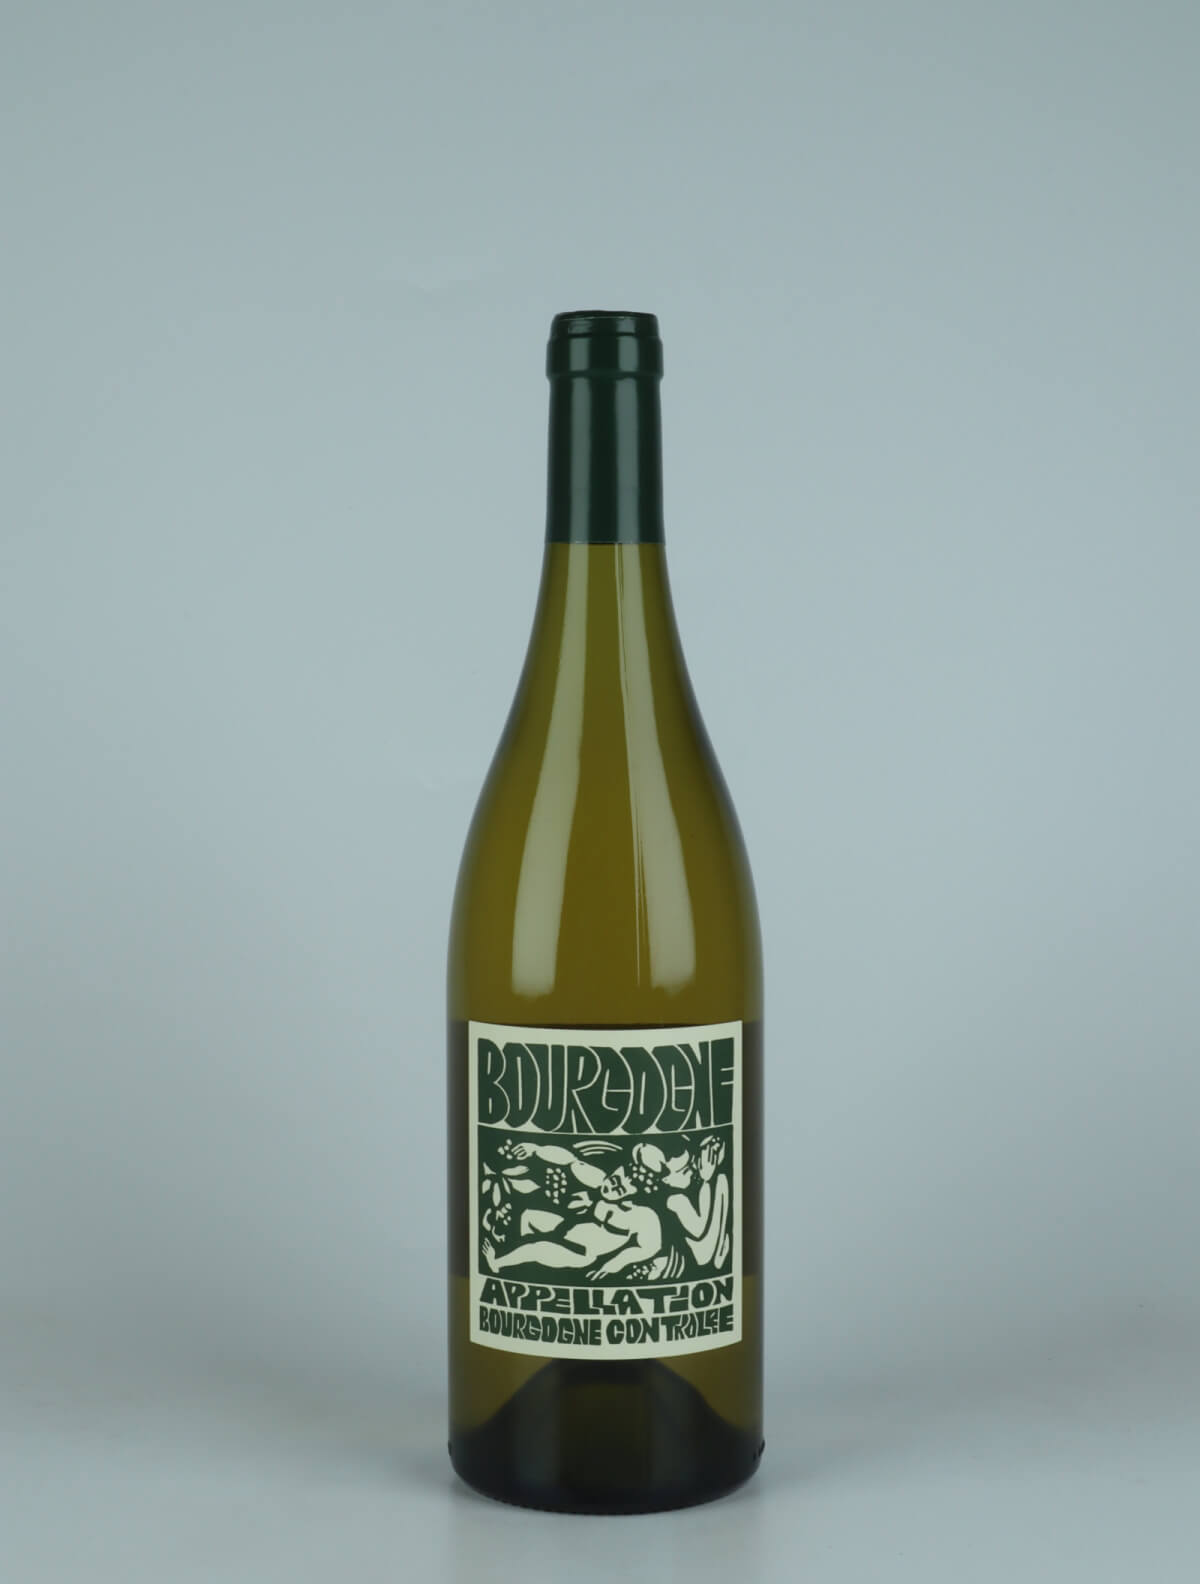 A bottle 2023 Bourgogne Blanc White wine from La Sœur Cadette, Burgundy in France